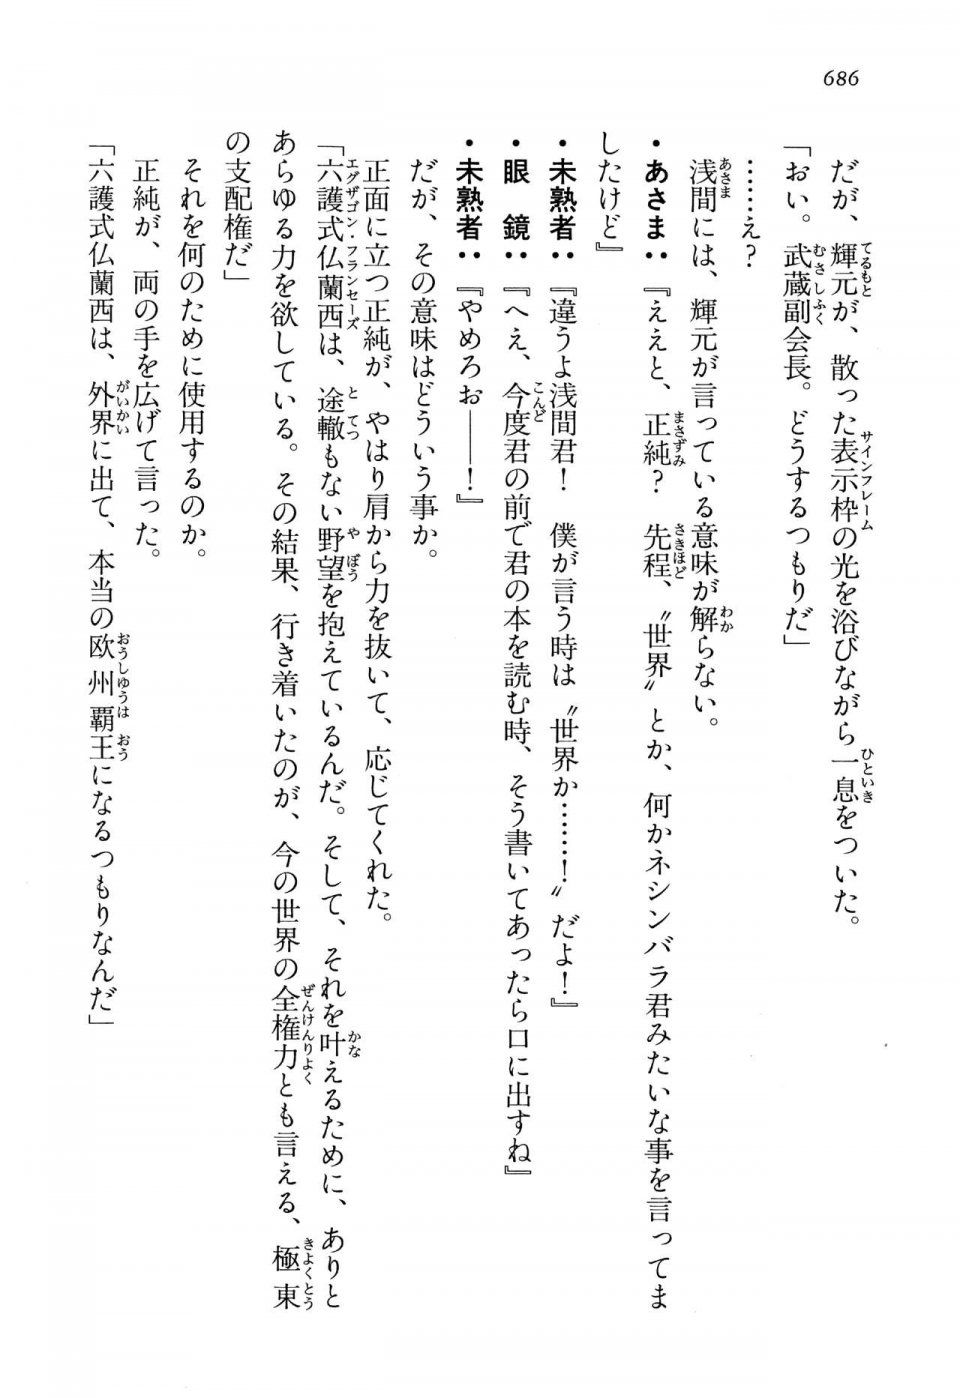 Kyoukai Senjou no Horizon LN Vol 13(6A) - Photo #686